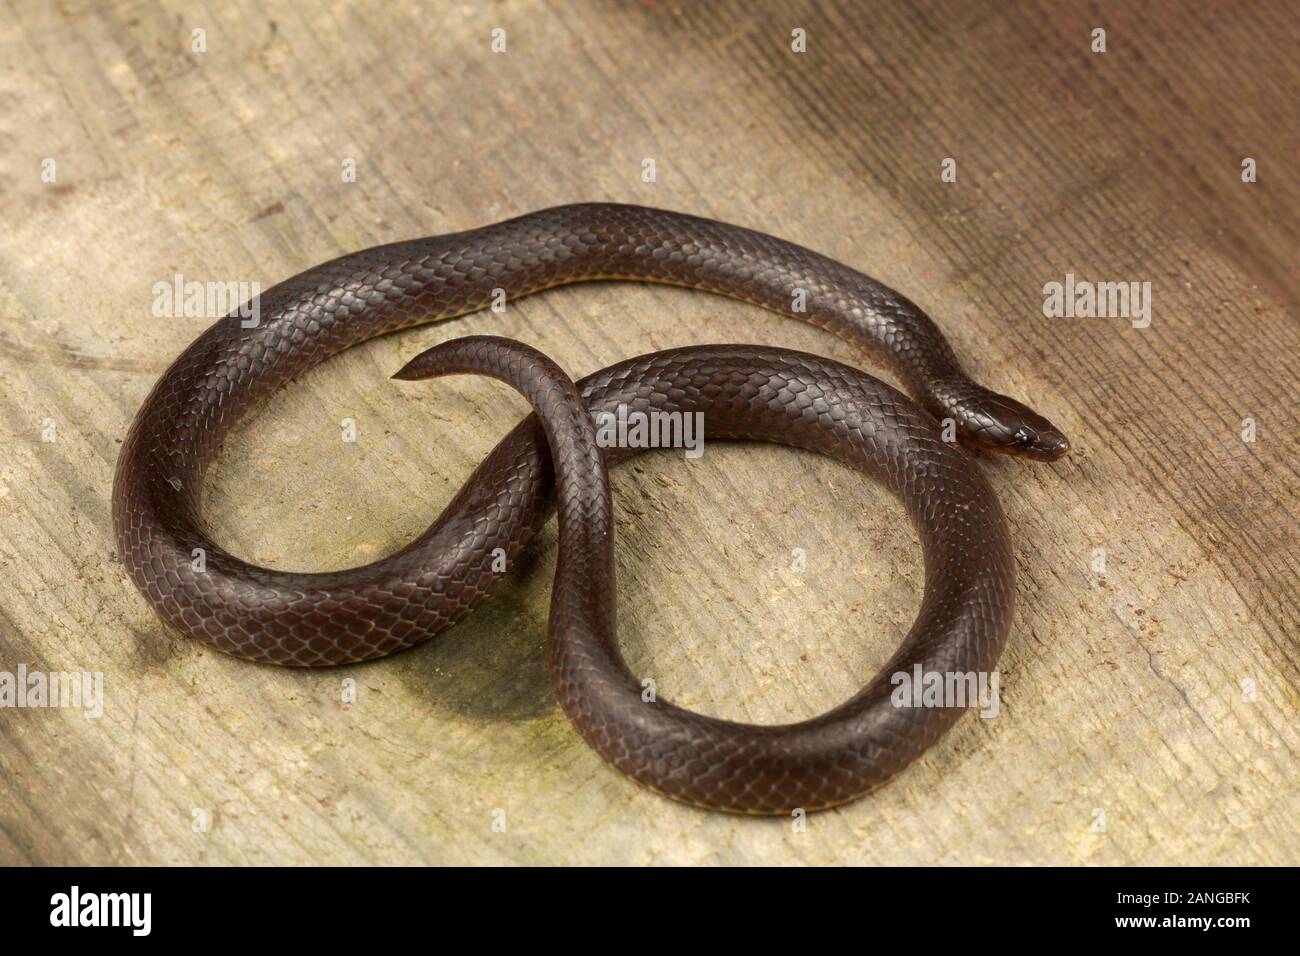 Trachischium schlanke Schlangen oder Worm-eating Schlangen, unterfamilie Natricinae Familie Colubridae. Endemisch in Asien. Stockfoto